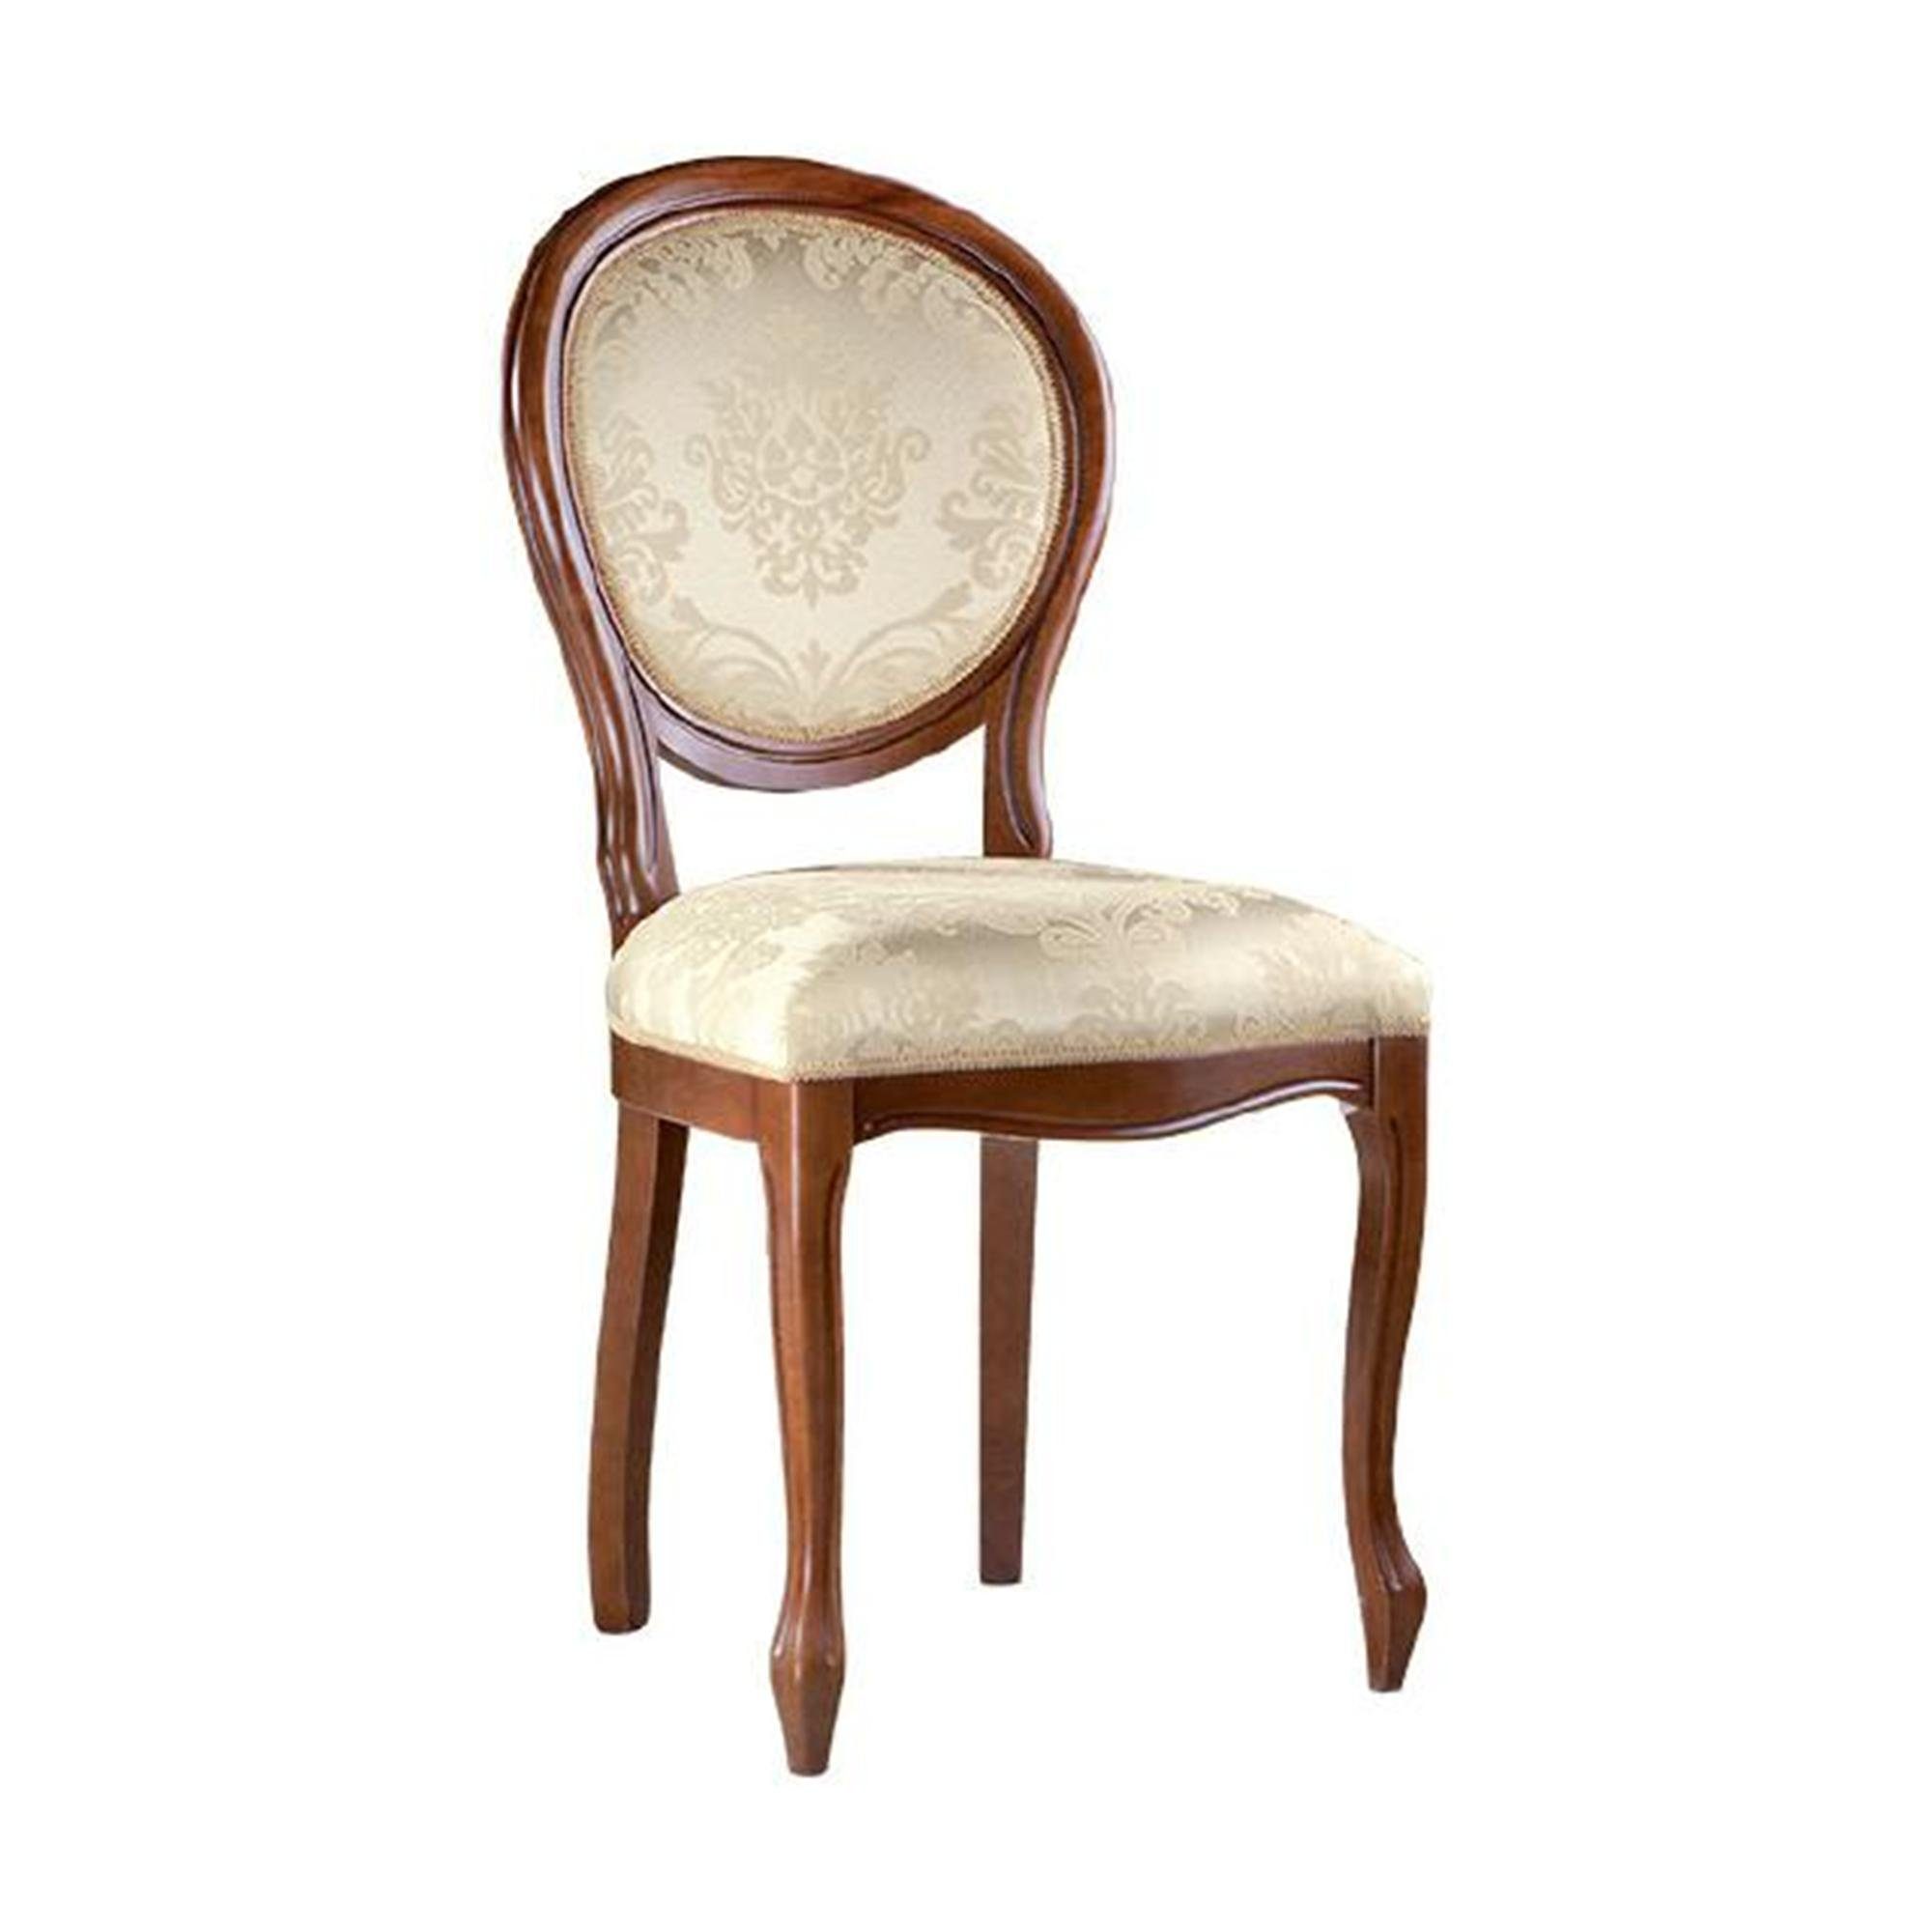 JVmoebel Stuhl, Klassische Stühle Stuhl Echtes Holz Massiv Französische Möbel Esszimmerstuhl